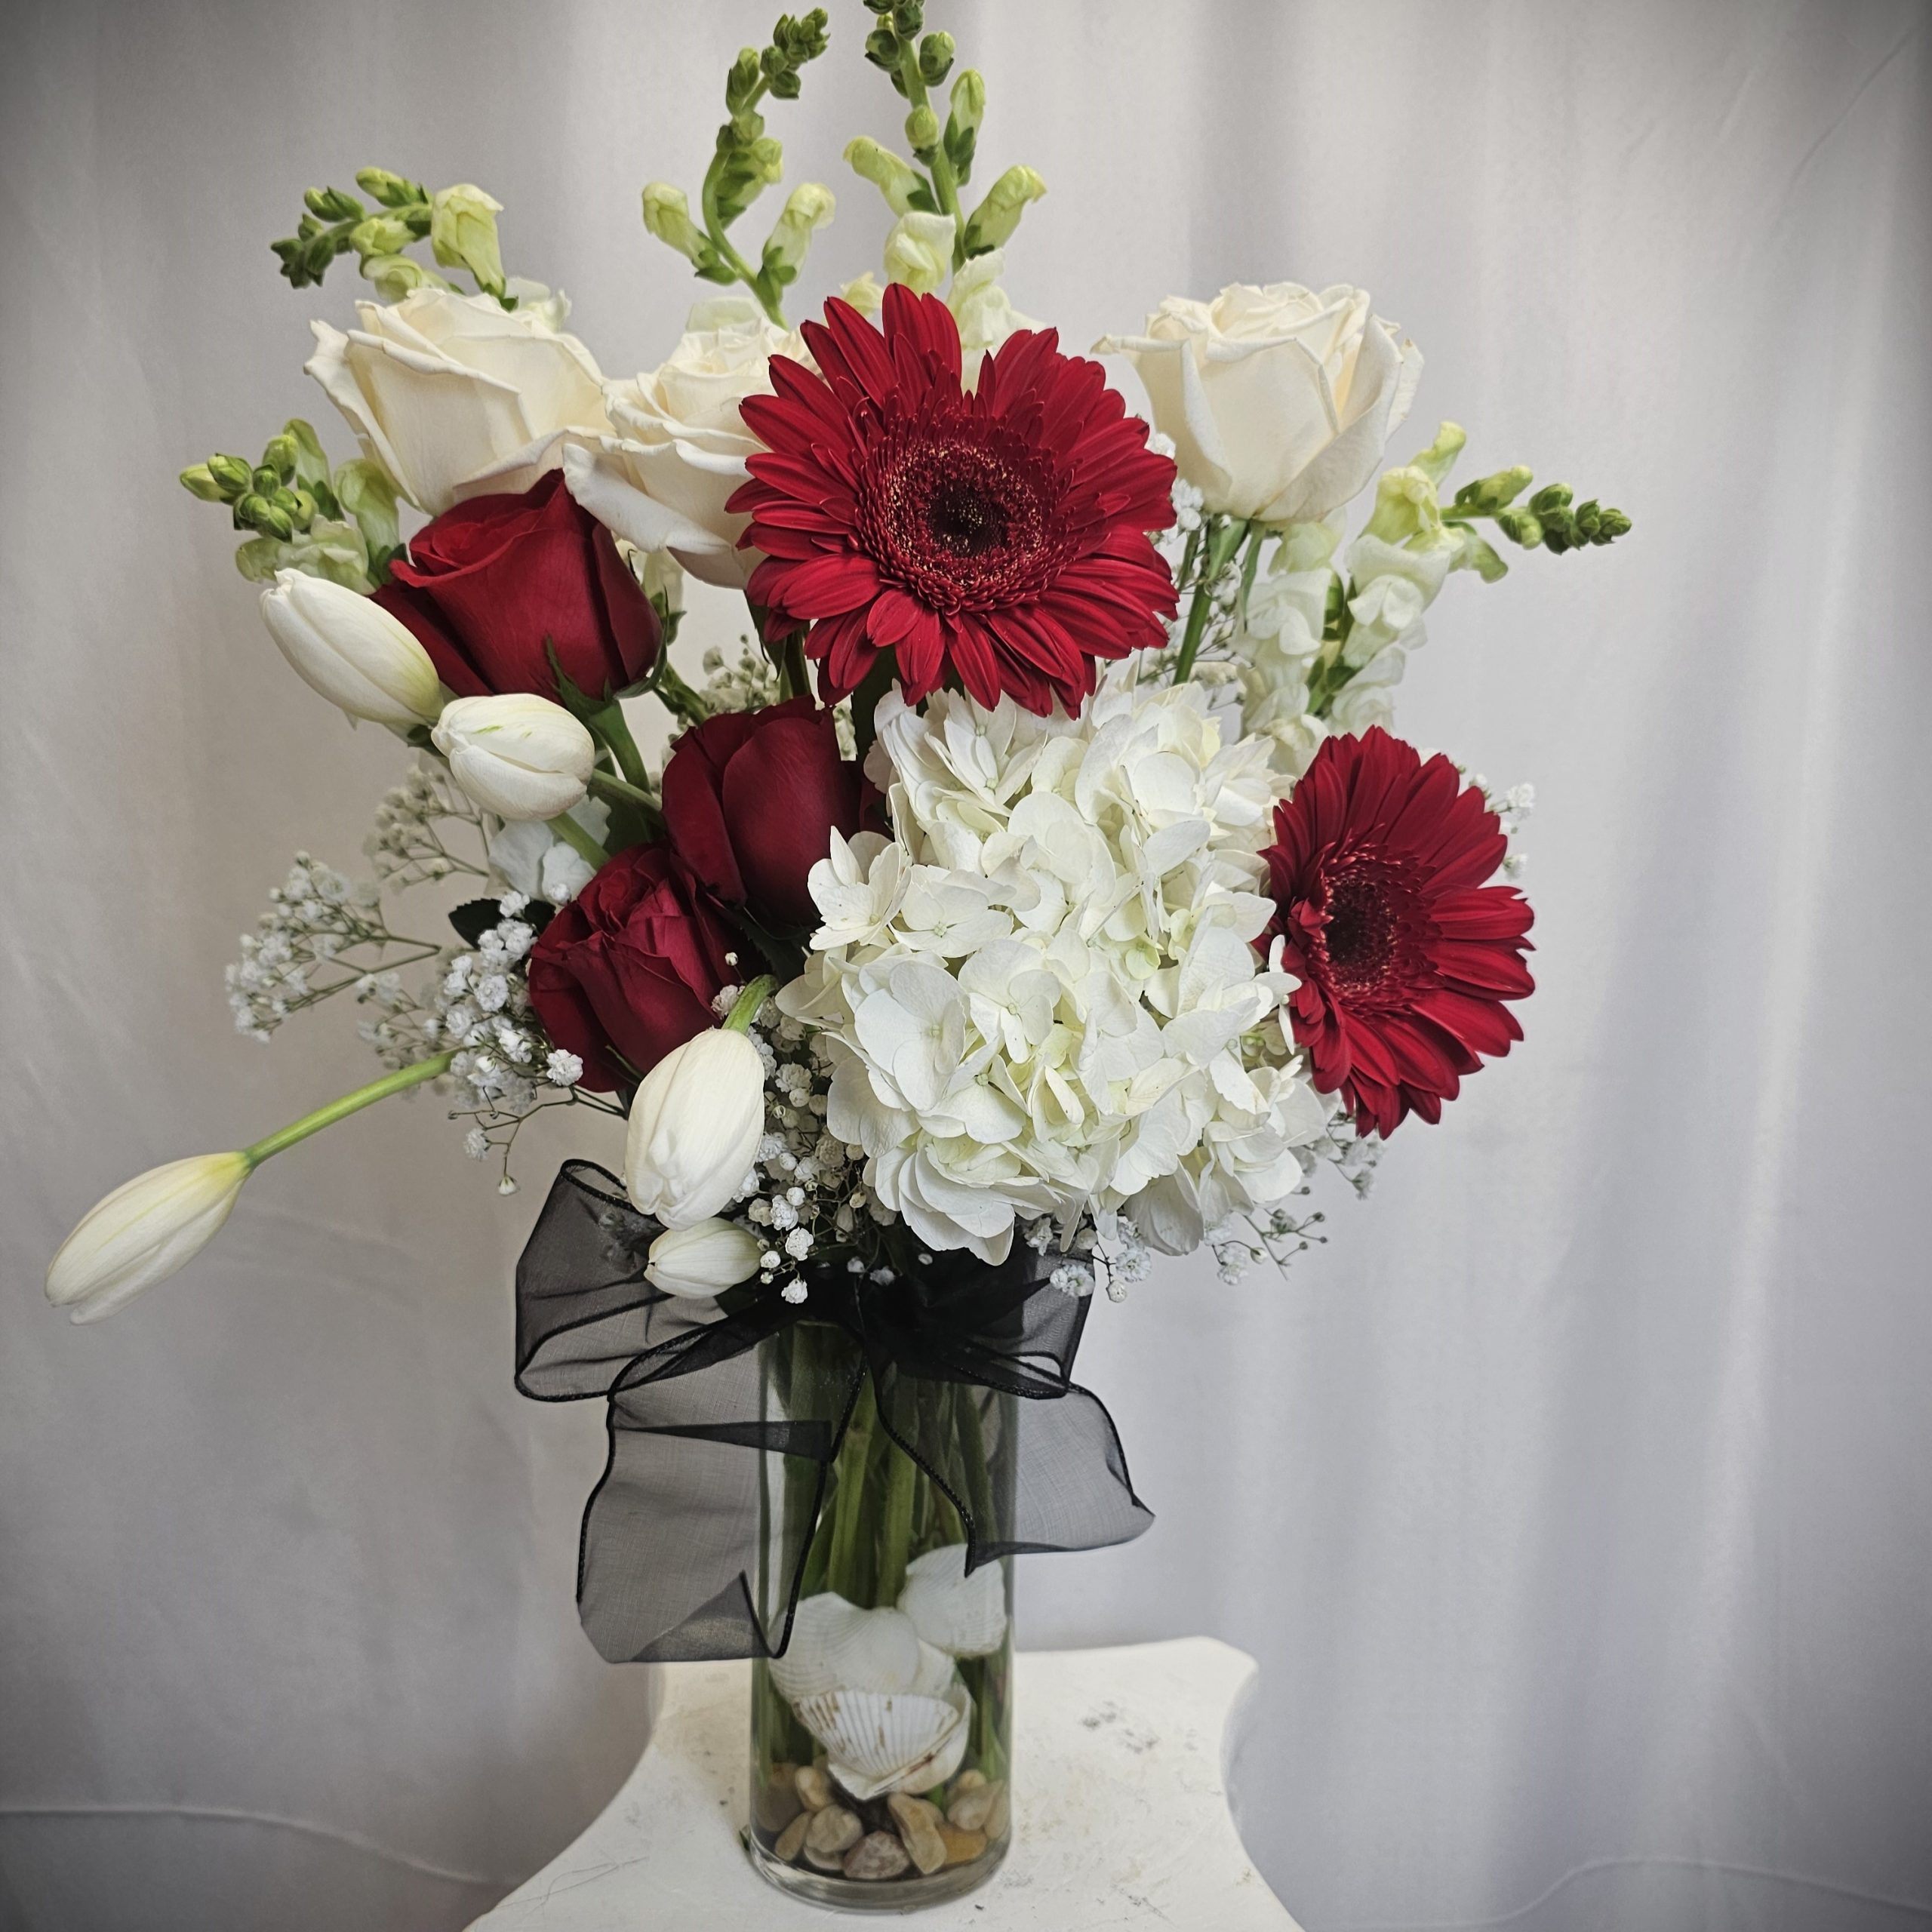 Elegant Red's & White's Vase